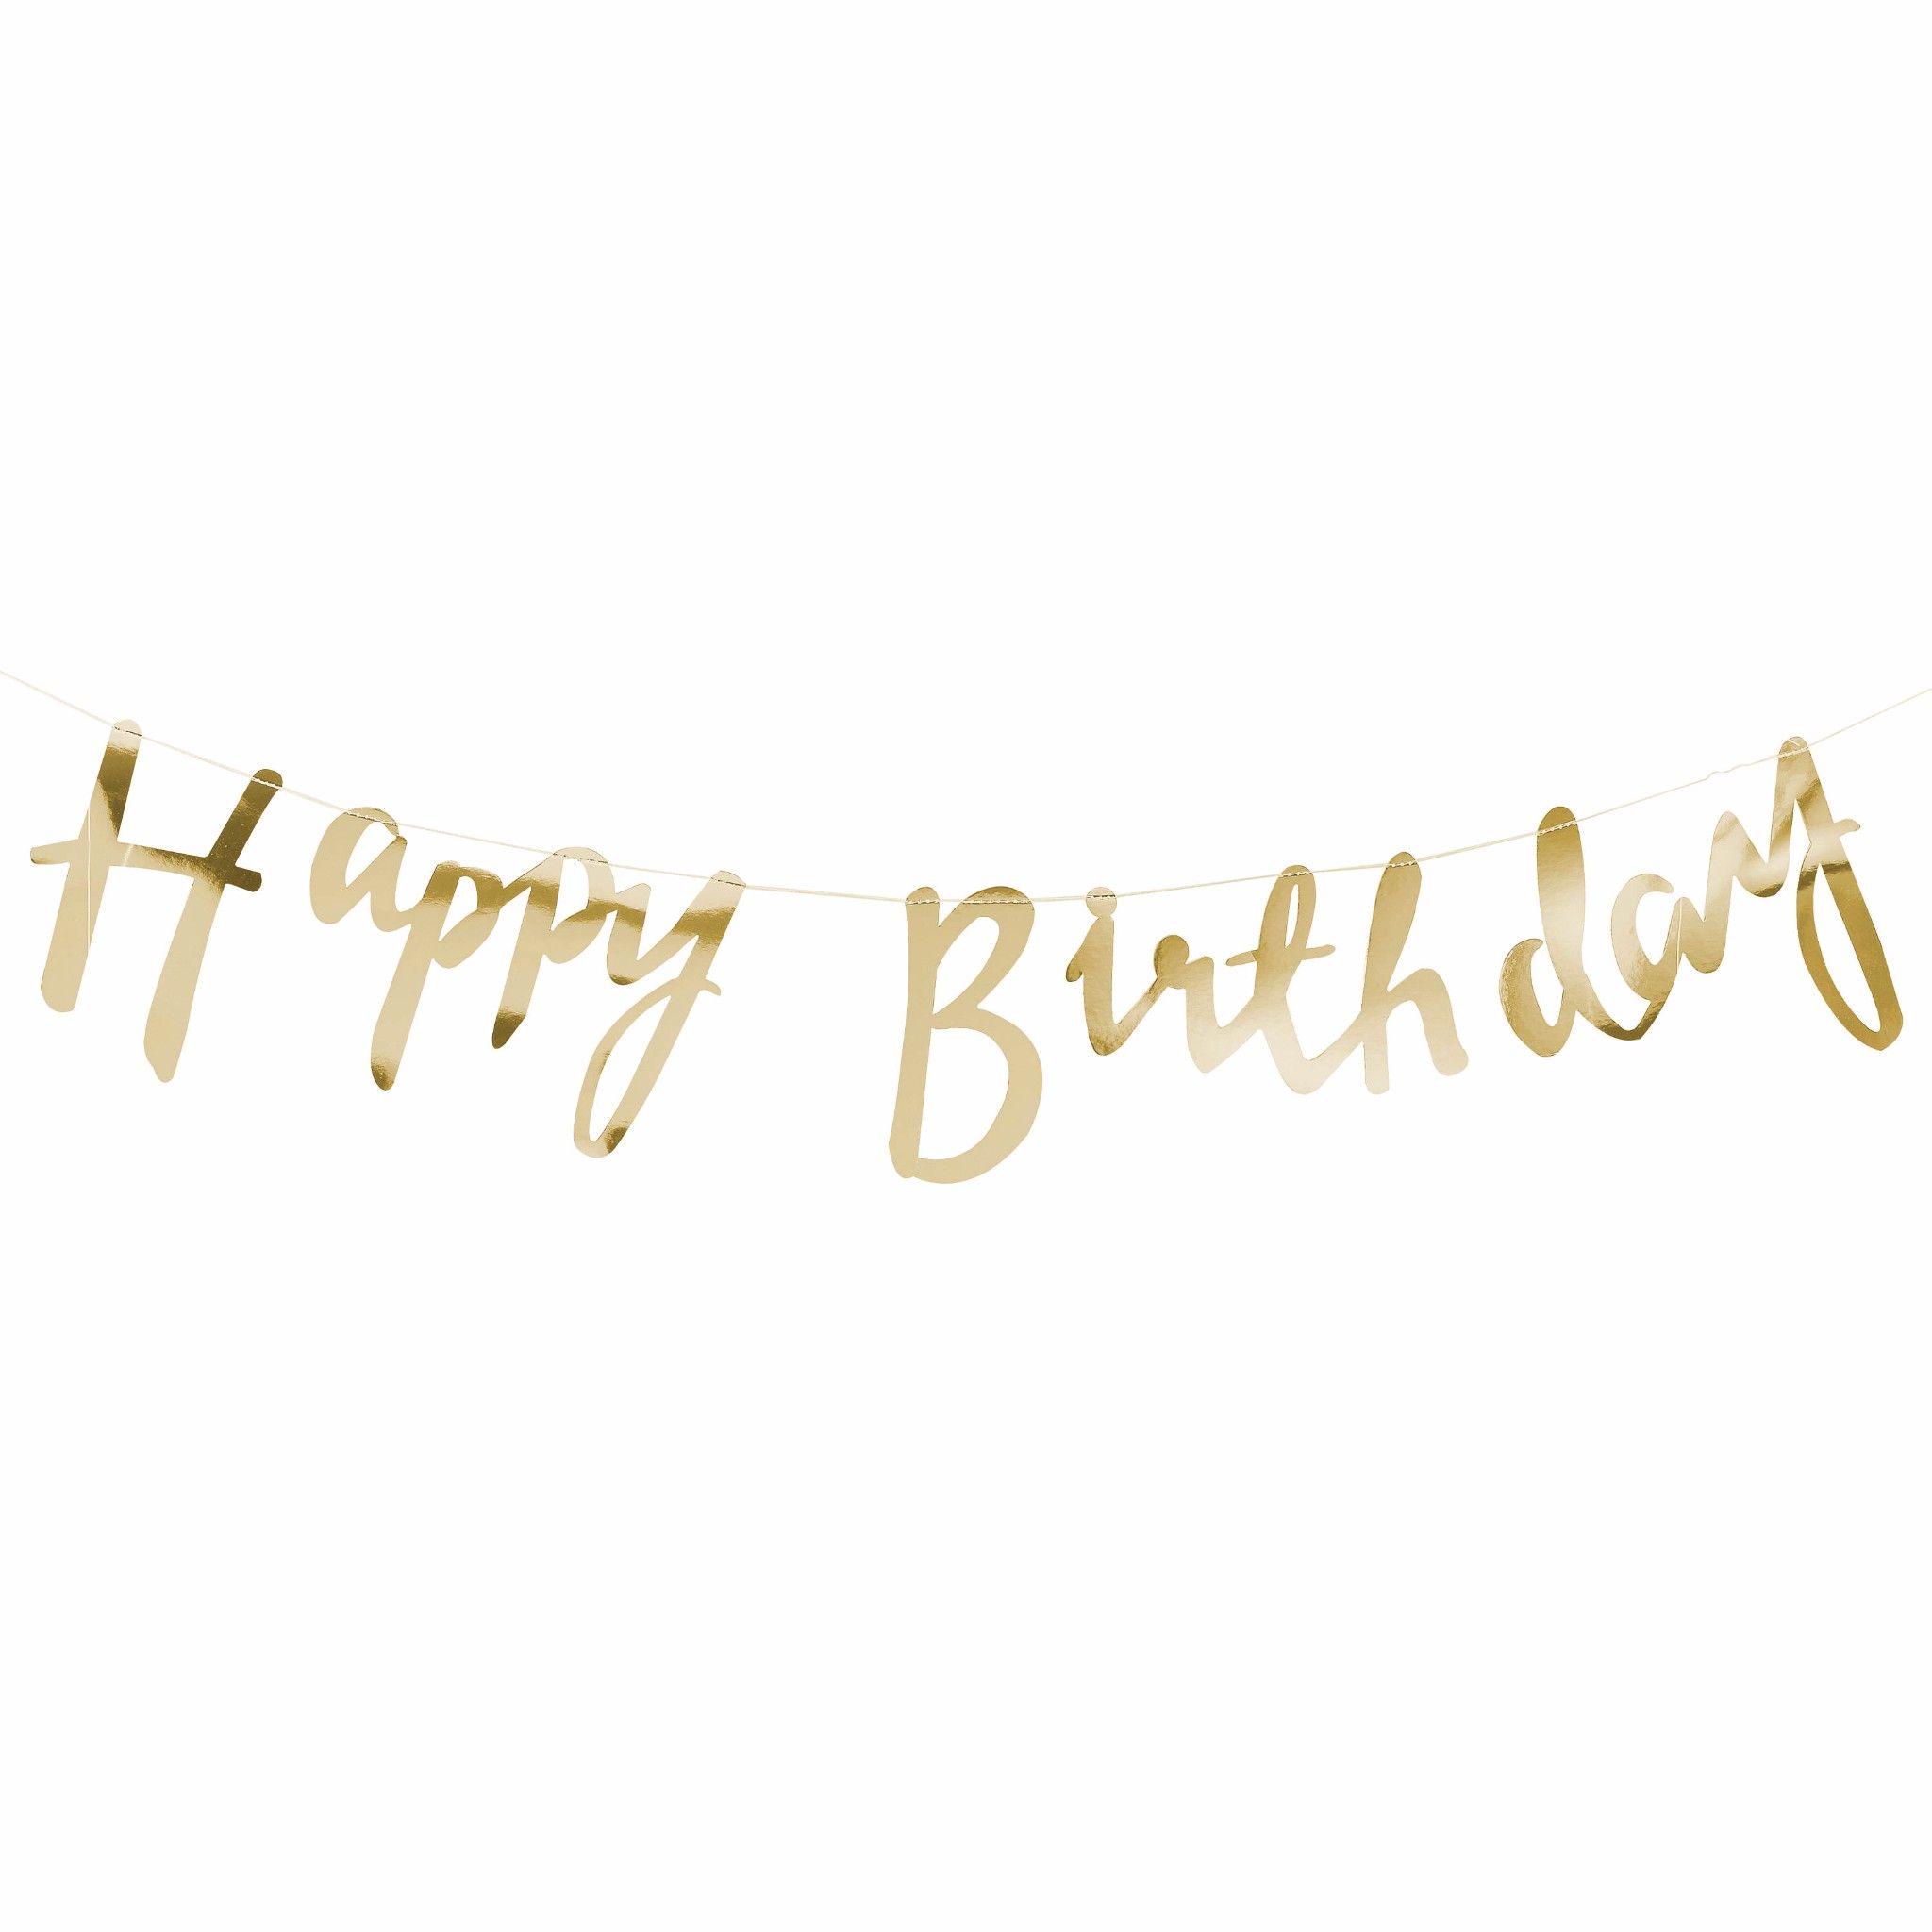 Bộ chữ sinh nhật tinh tế và đầy màu sắc sẽ giúp bạn tạo nên những thông điệp sinh nhật thật đặc biệt. Bộ chữ sinh nhật được thiết kế đa dạng, dễ sử dụng và đủ sức thuyết phục để giúp bạn gửi gắm tất cả những lời chúc mừng tốt đẹp nhất!